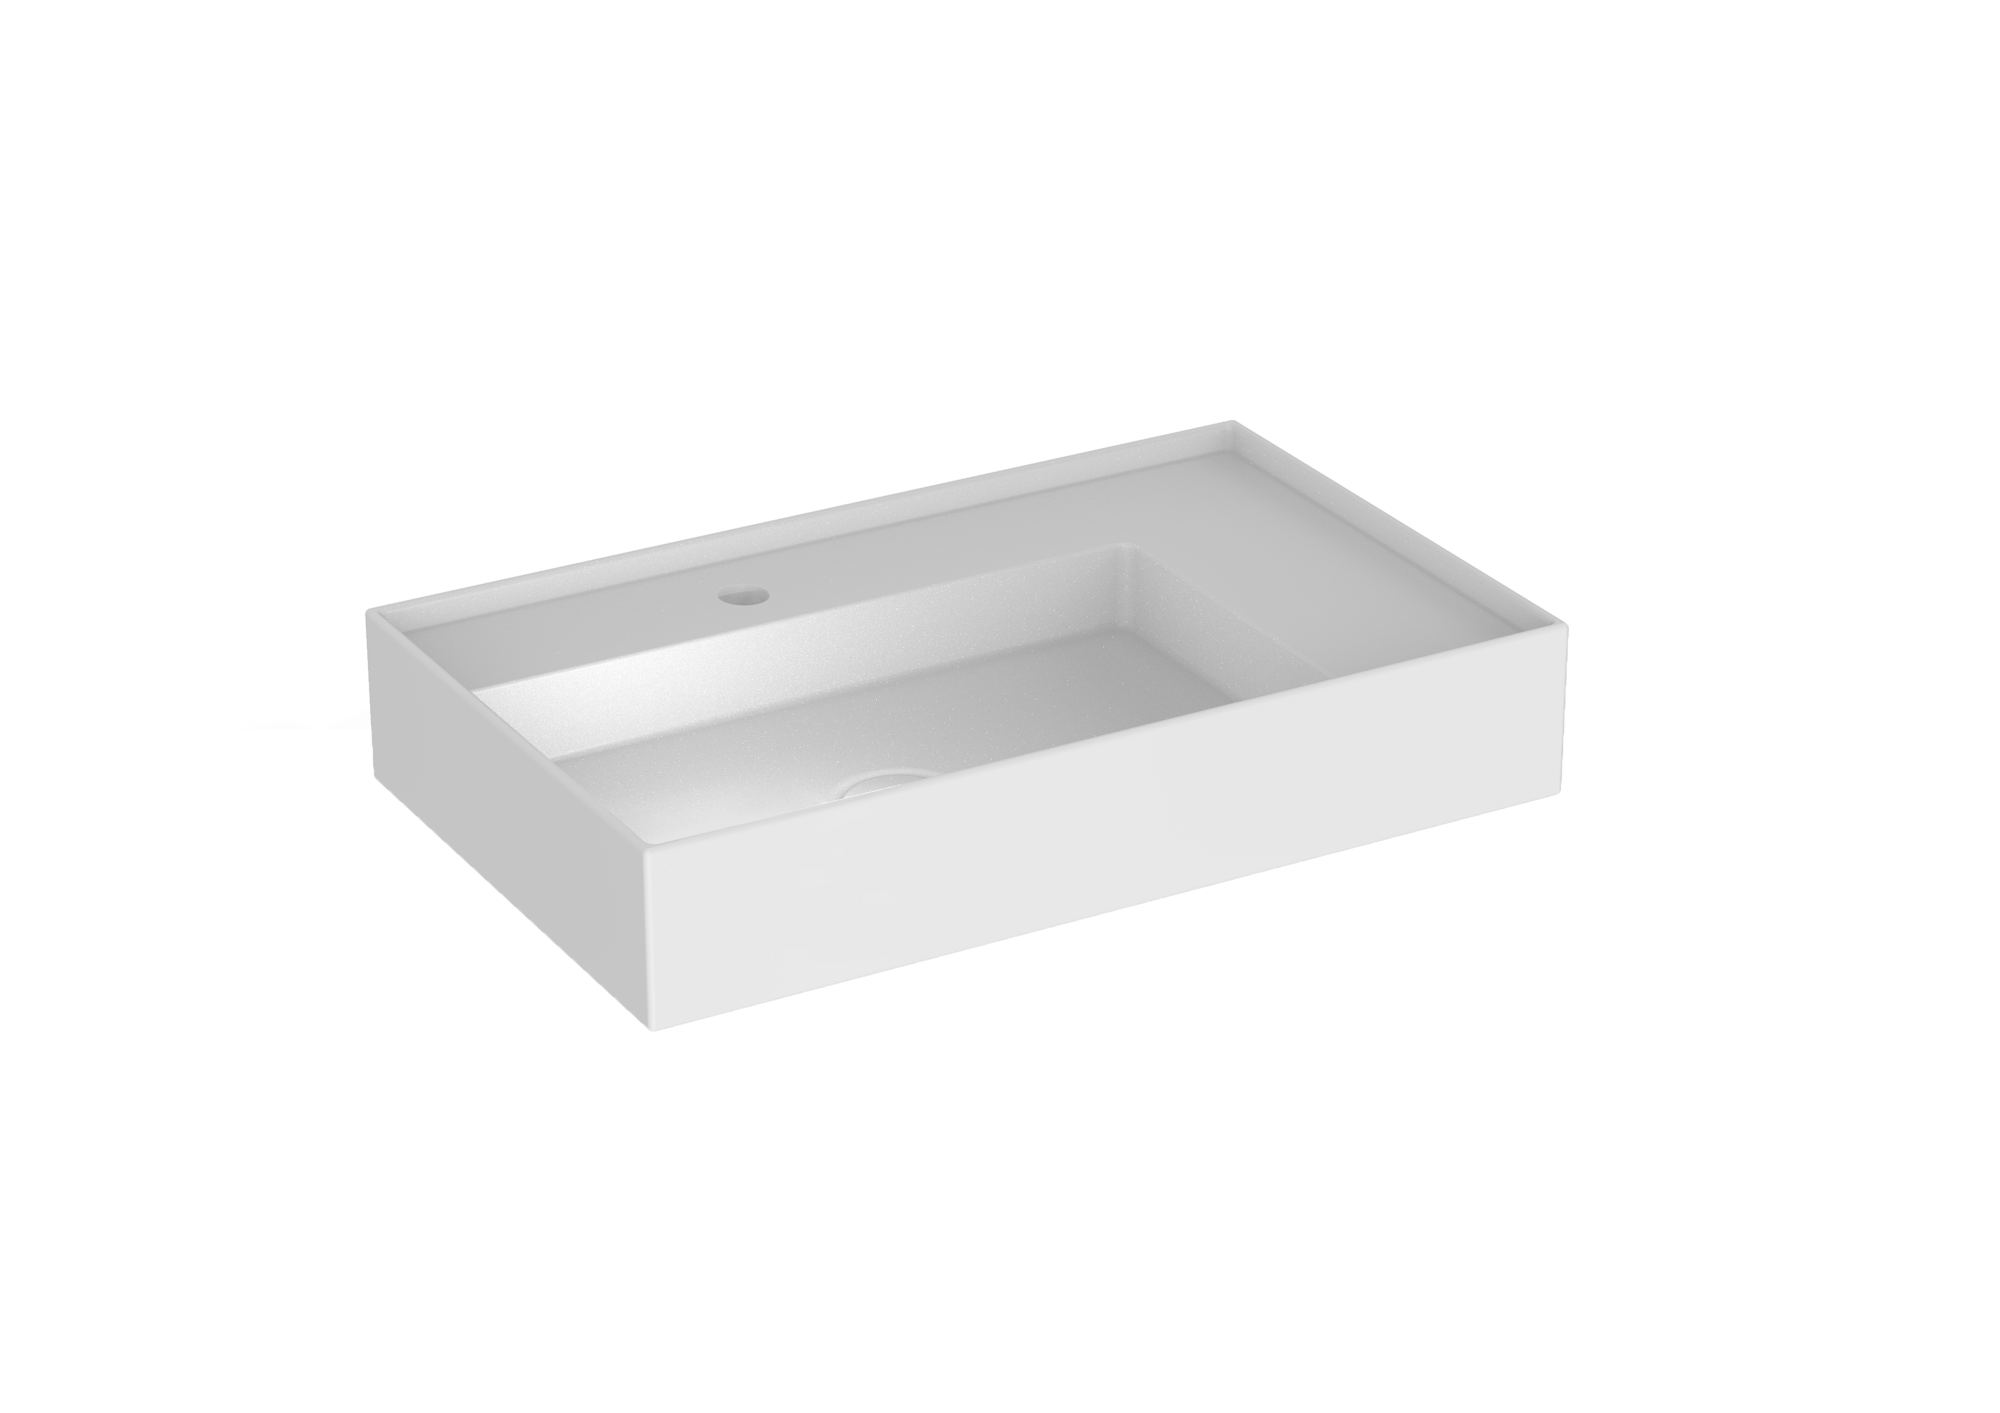 ICON 65x40cm countertop washbasin 1TH - Matte White